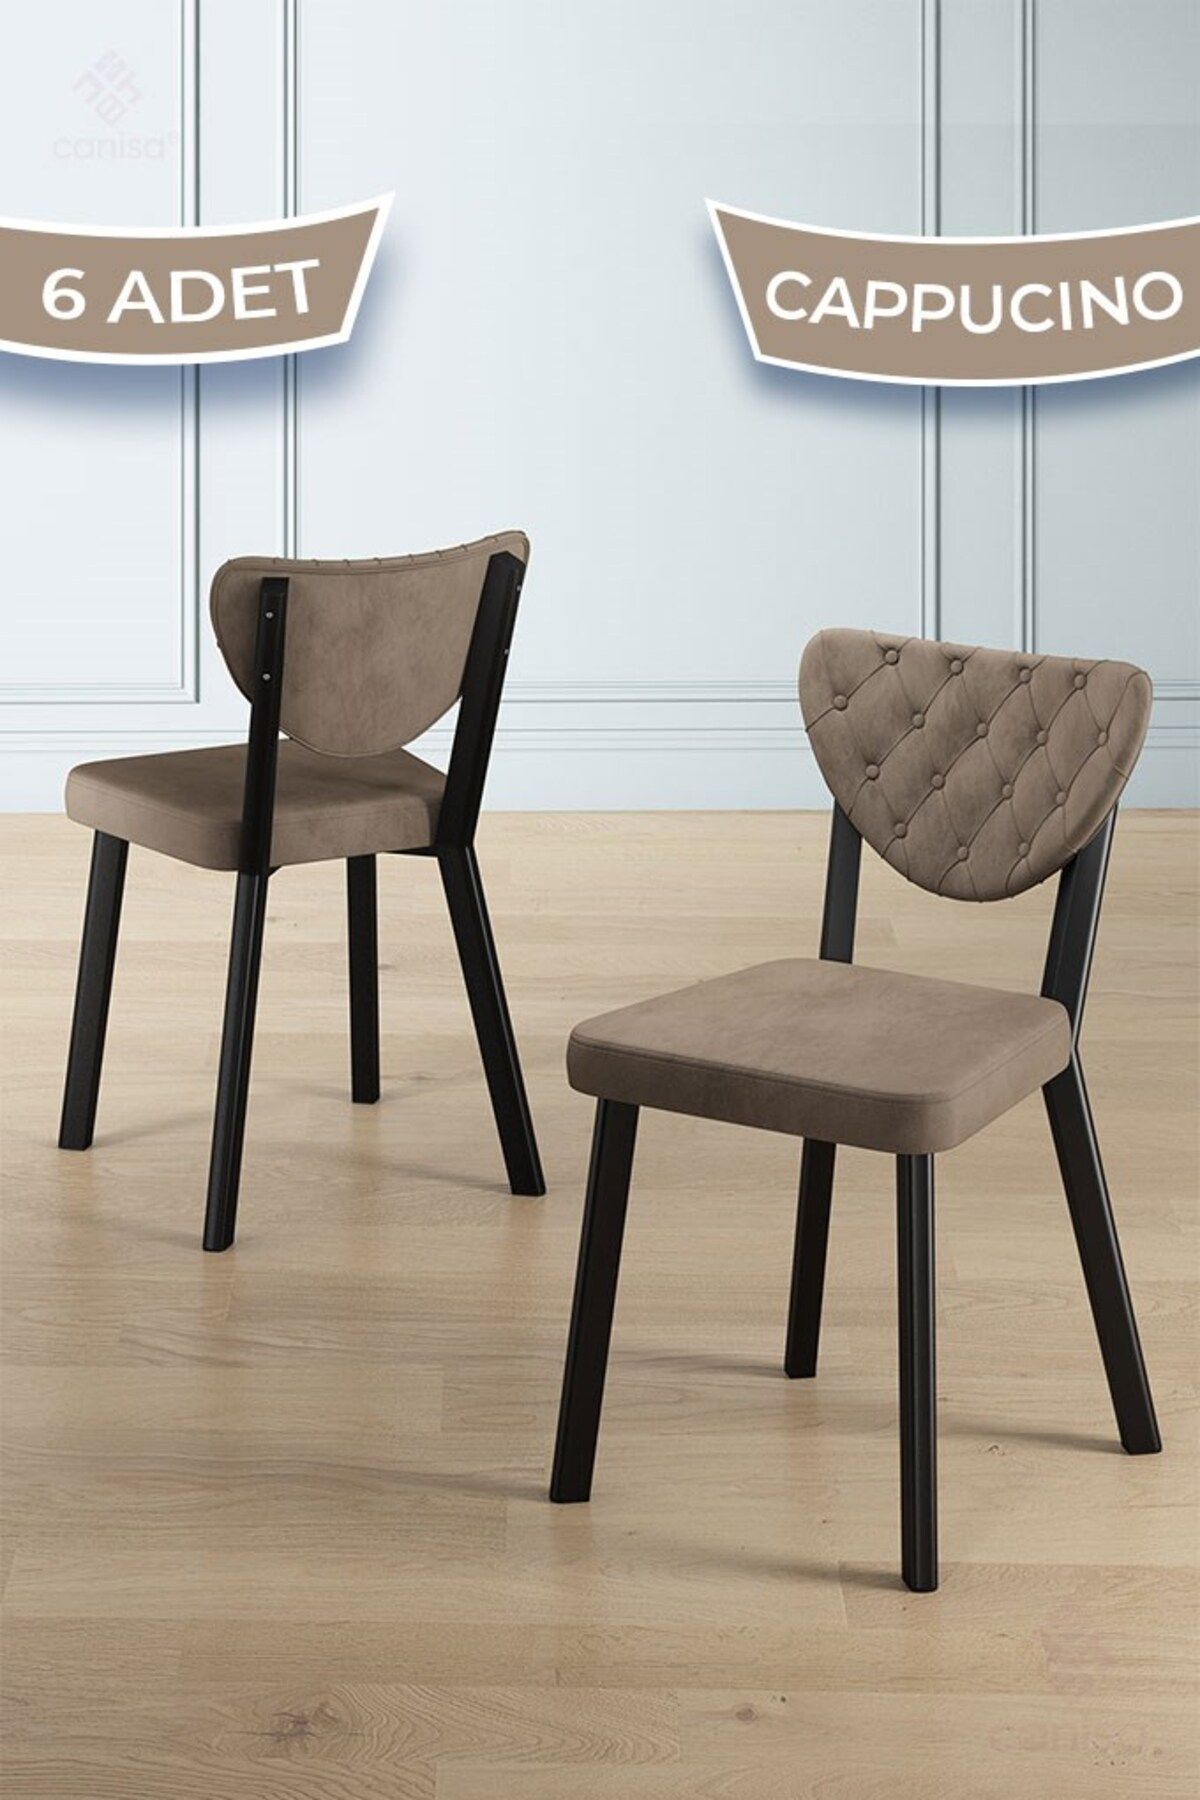 Canisa Alse Serisi 6 Adet Cappucino Mutfak Sandalyesi Siyah Metal İskeletli 1. Sınıf Babyface Kumaş